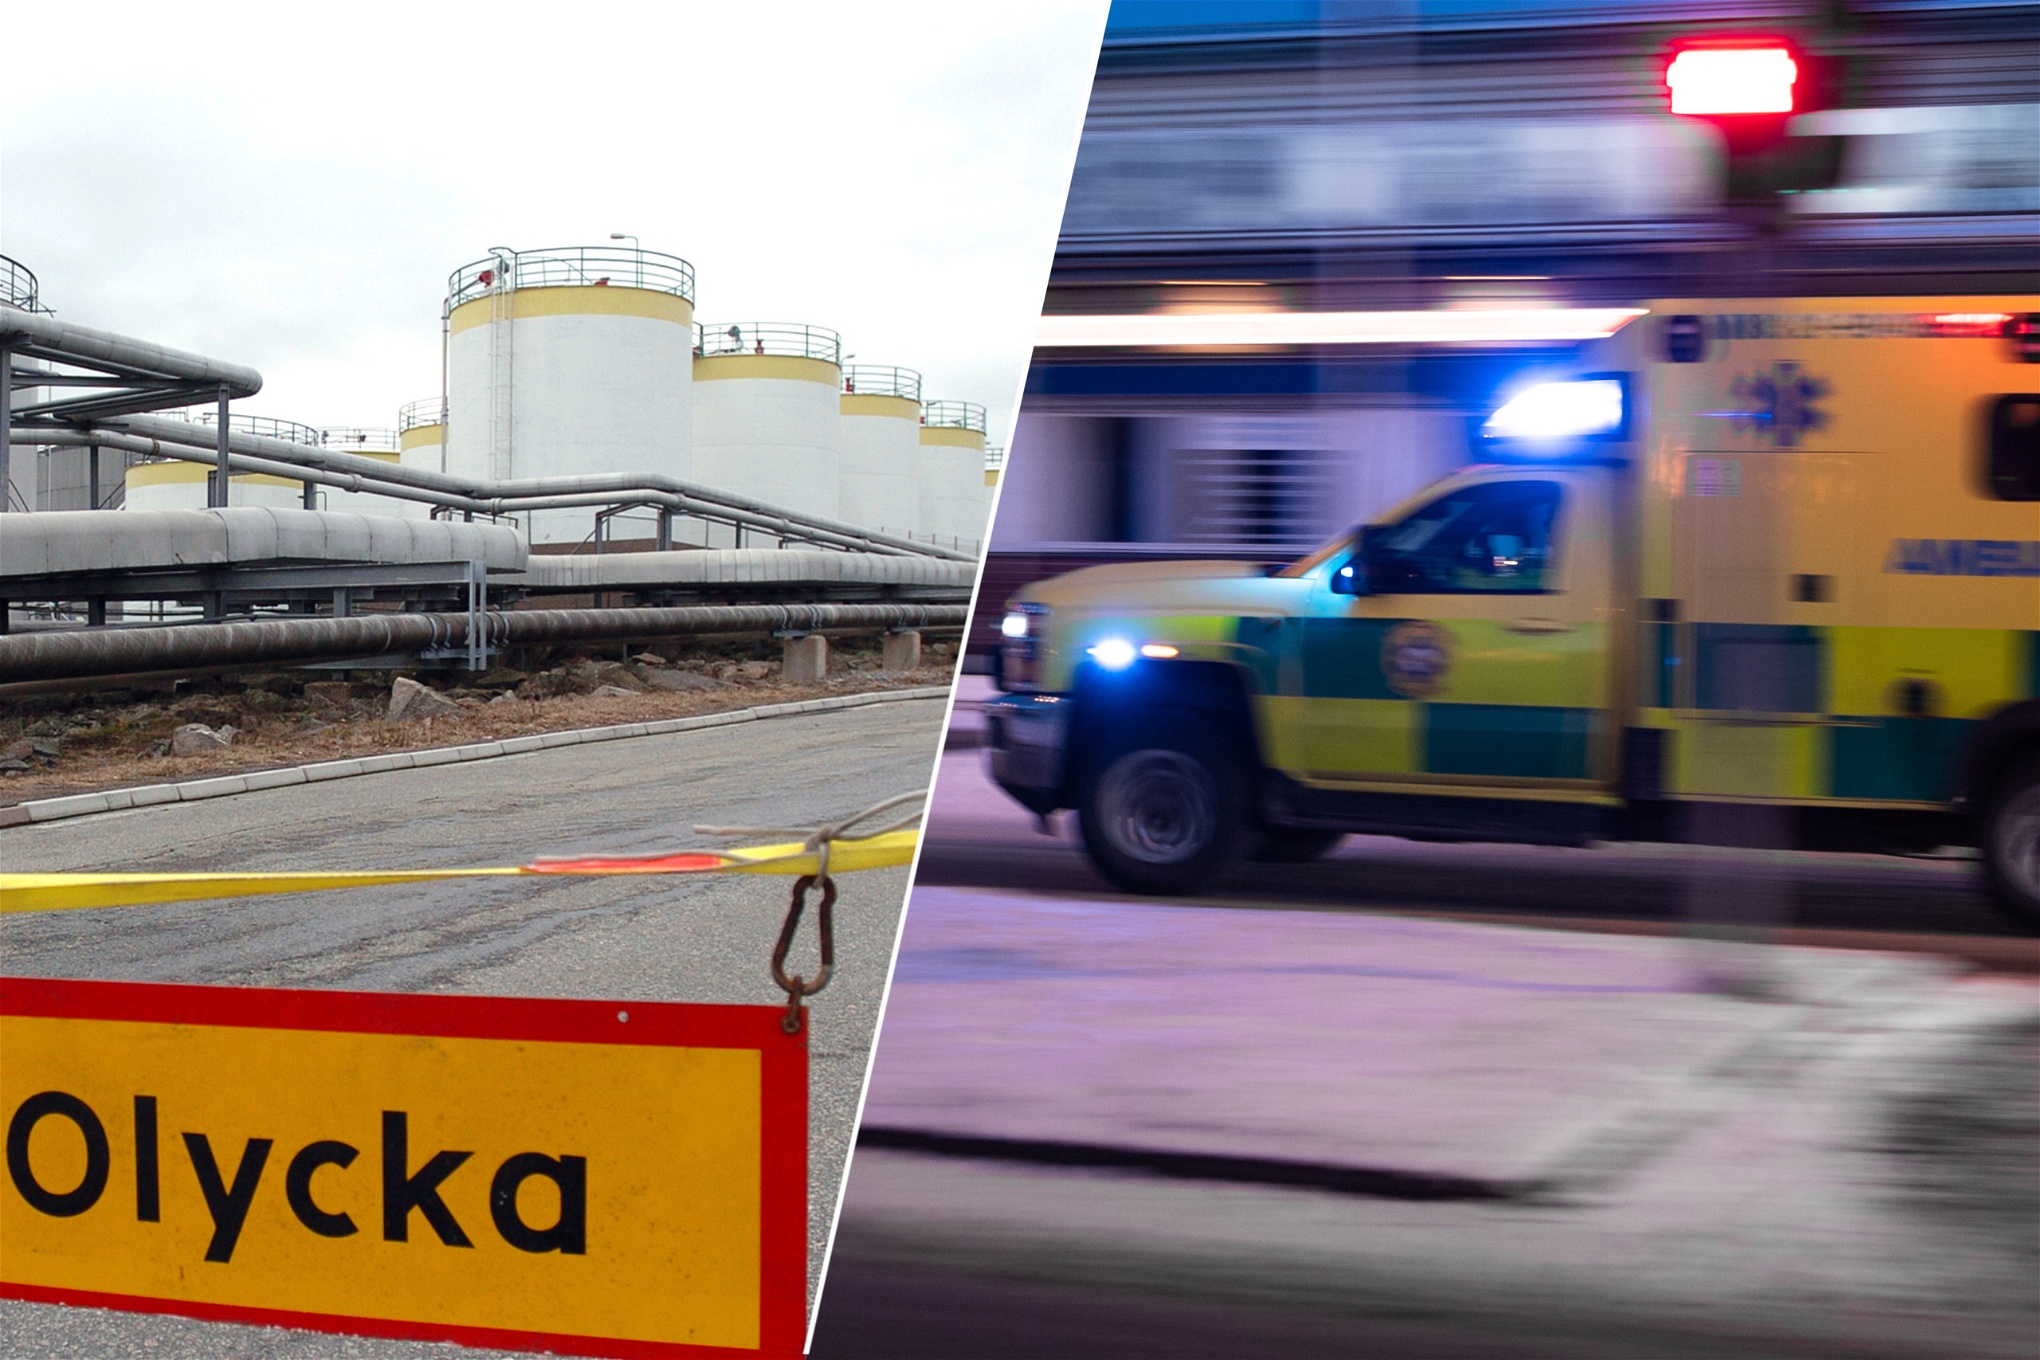 Montage av Göteborgs oljehamn och Ambulans i ilfart